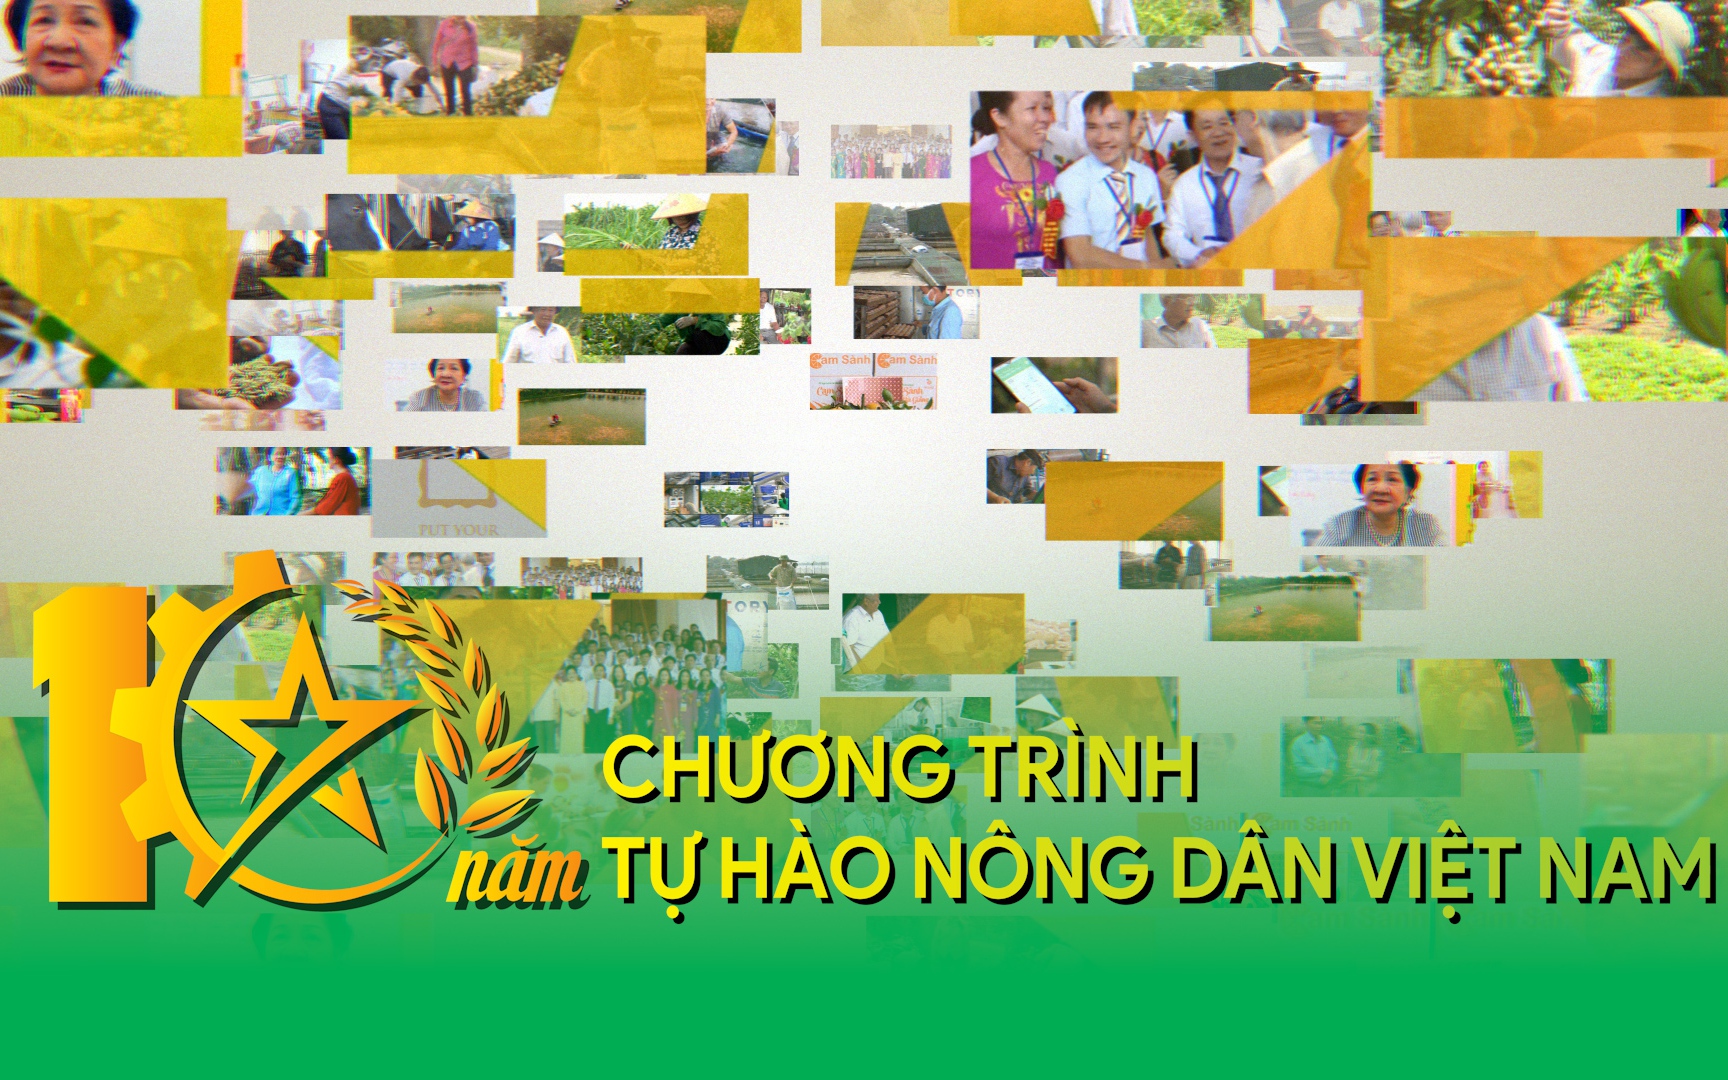 Video: 10 năm Chương trình Tự hào Nông dân Việt Nam - Một thập kỷ xanh